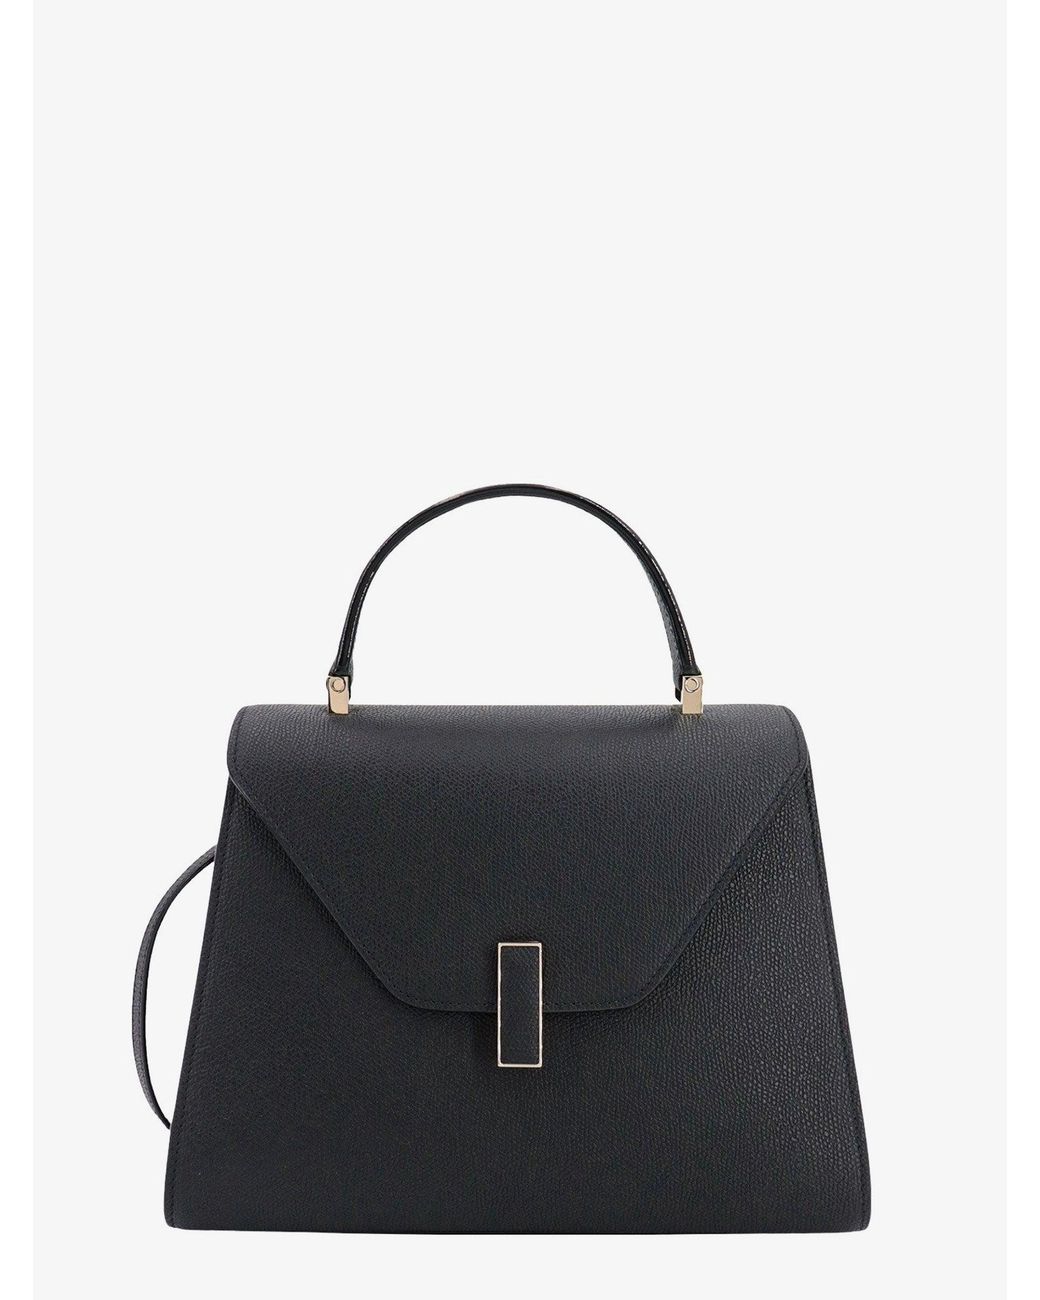 Valextra Handbag in Black | Lyst